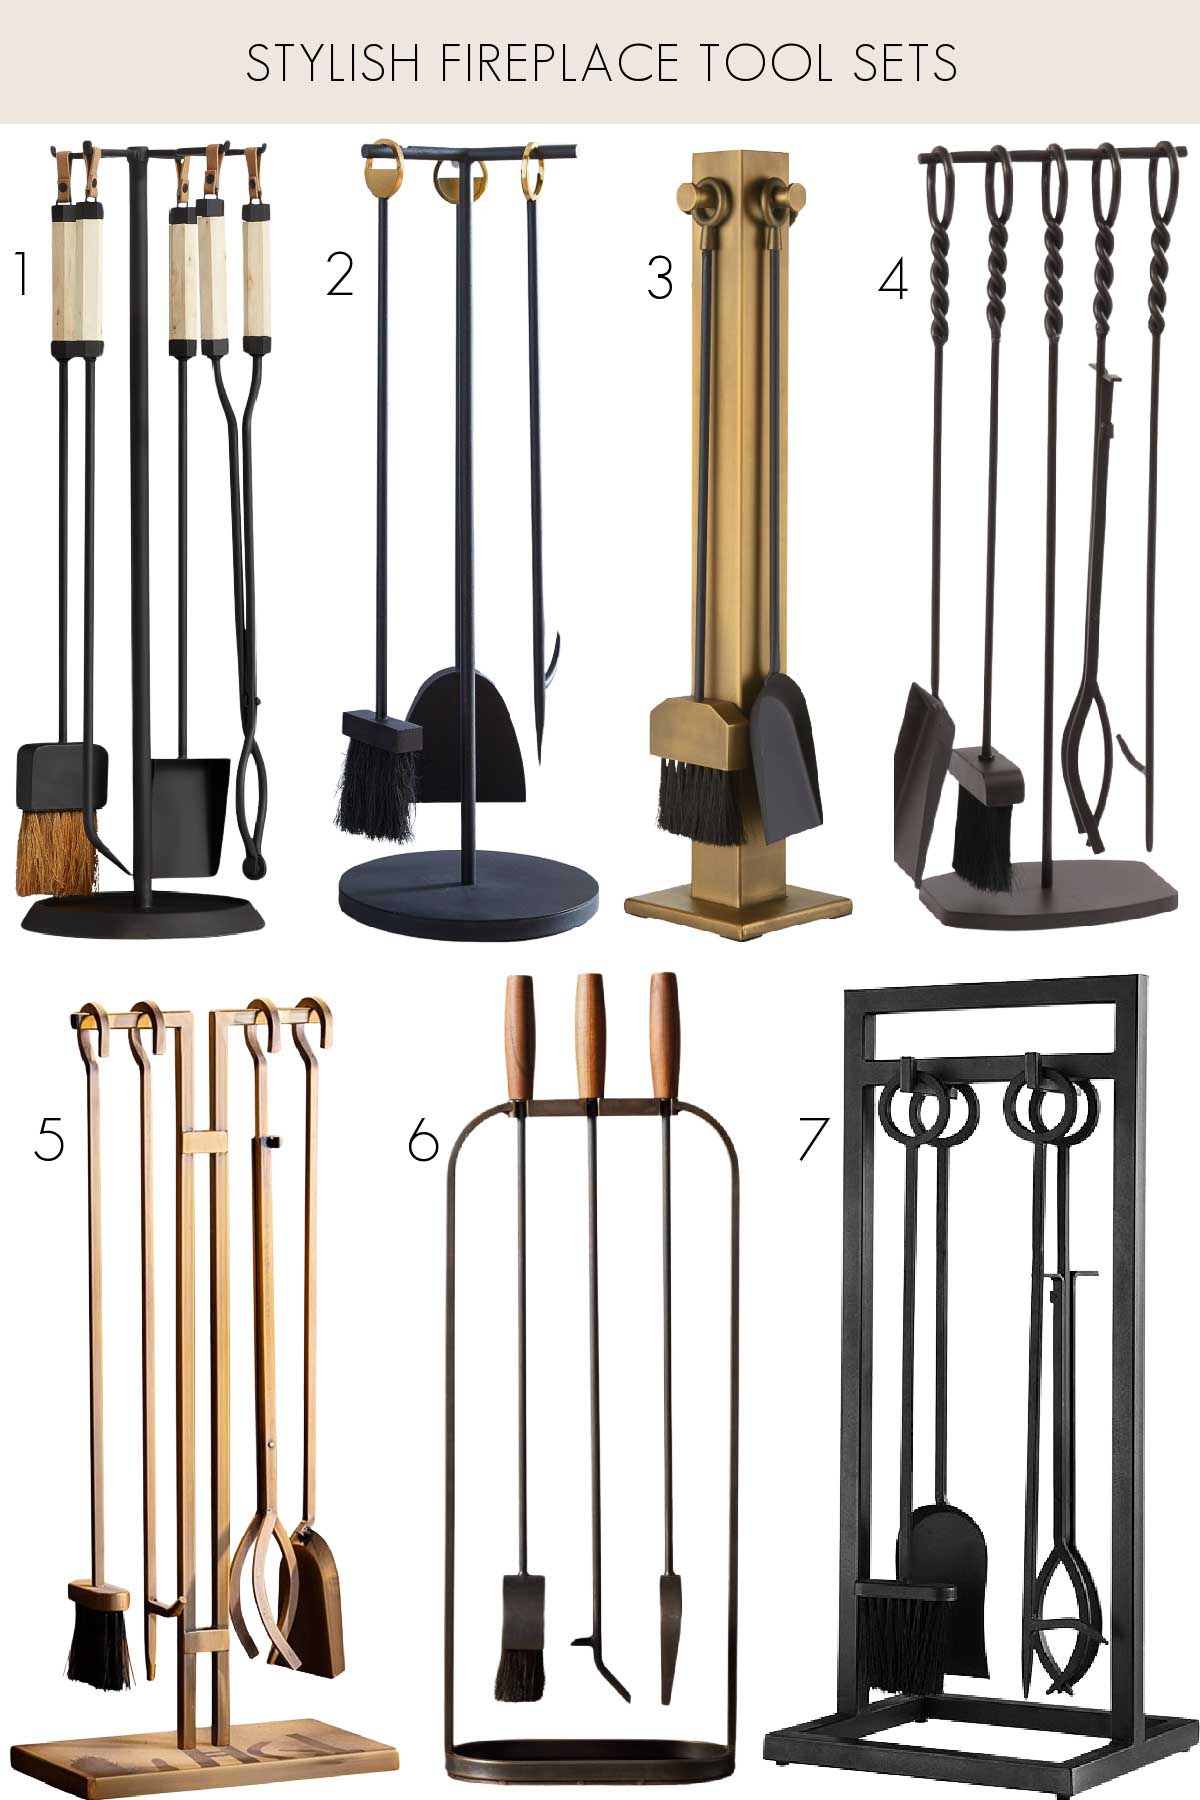 7 stylish fireplace tool sets